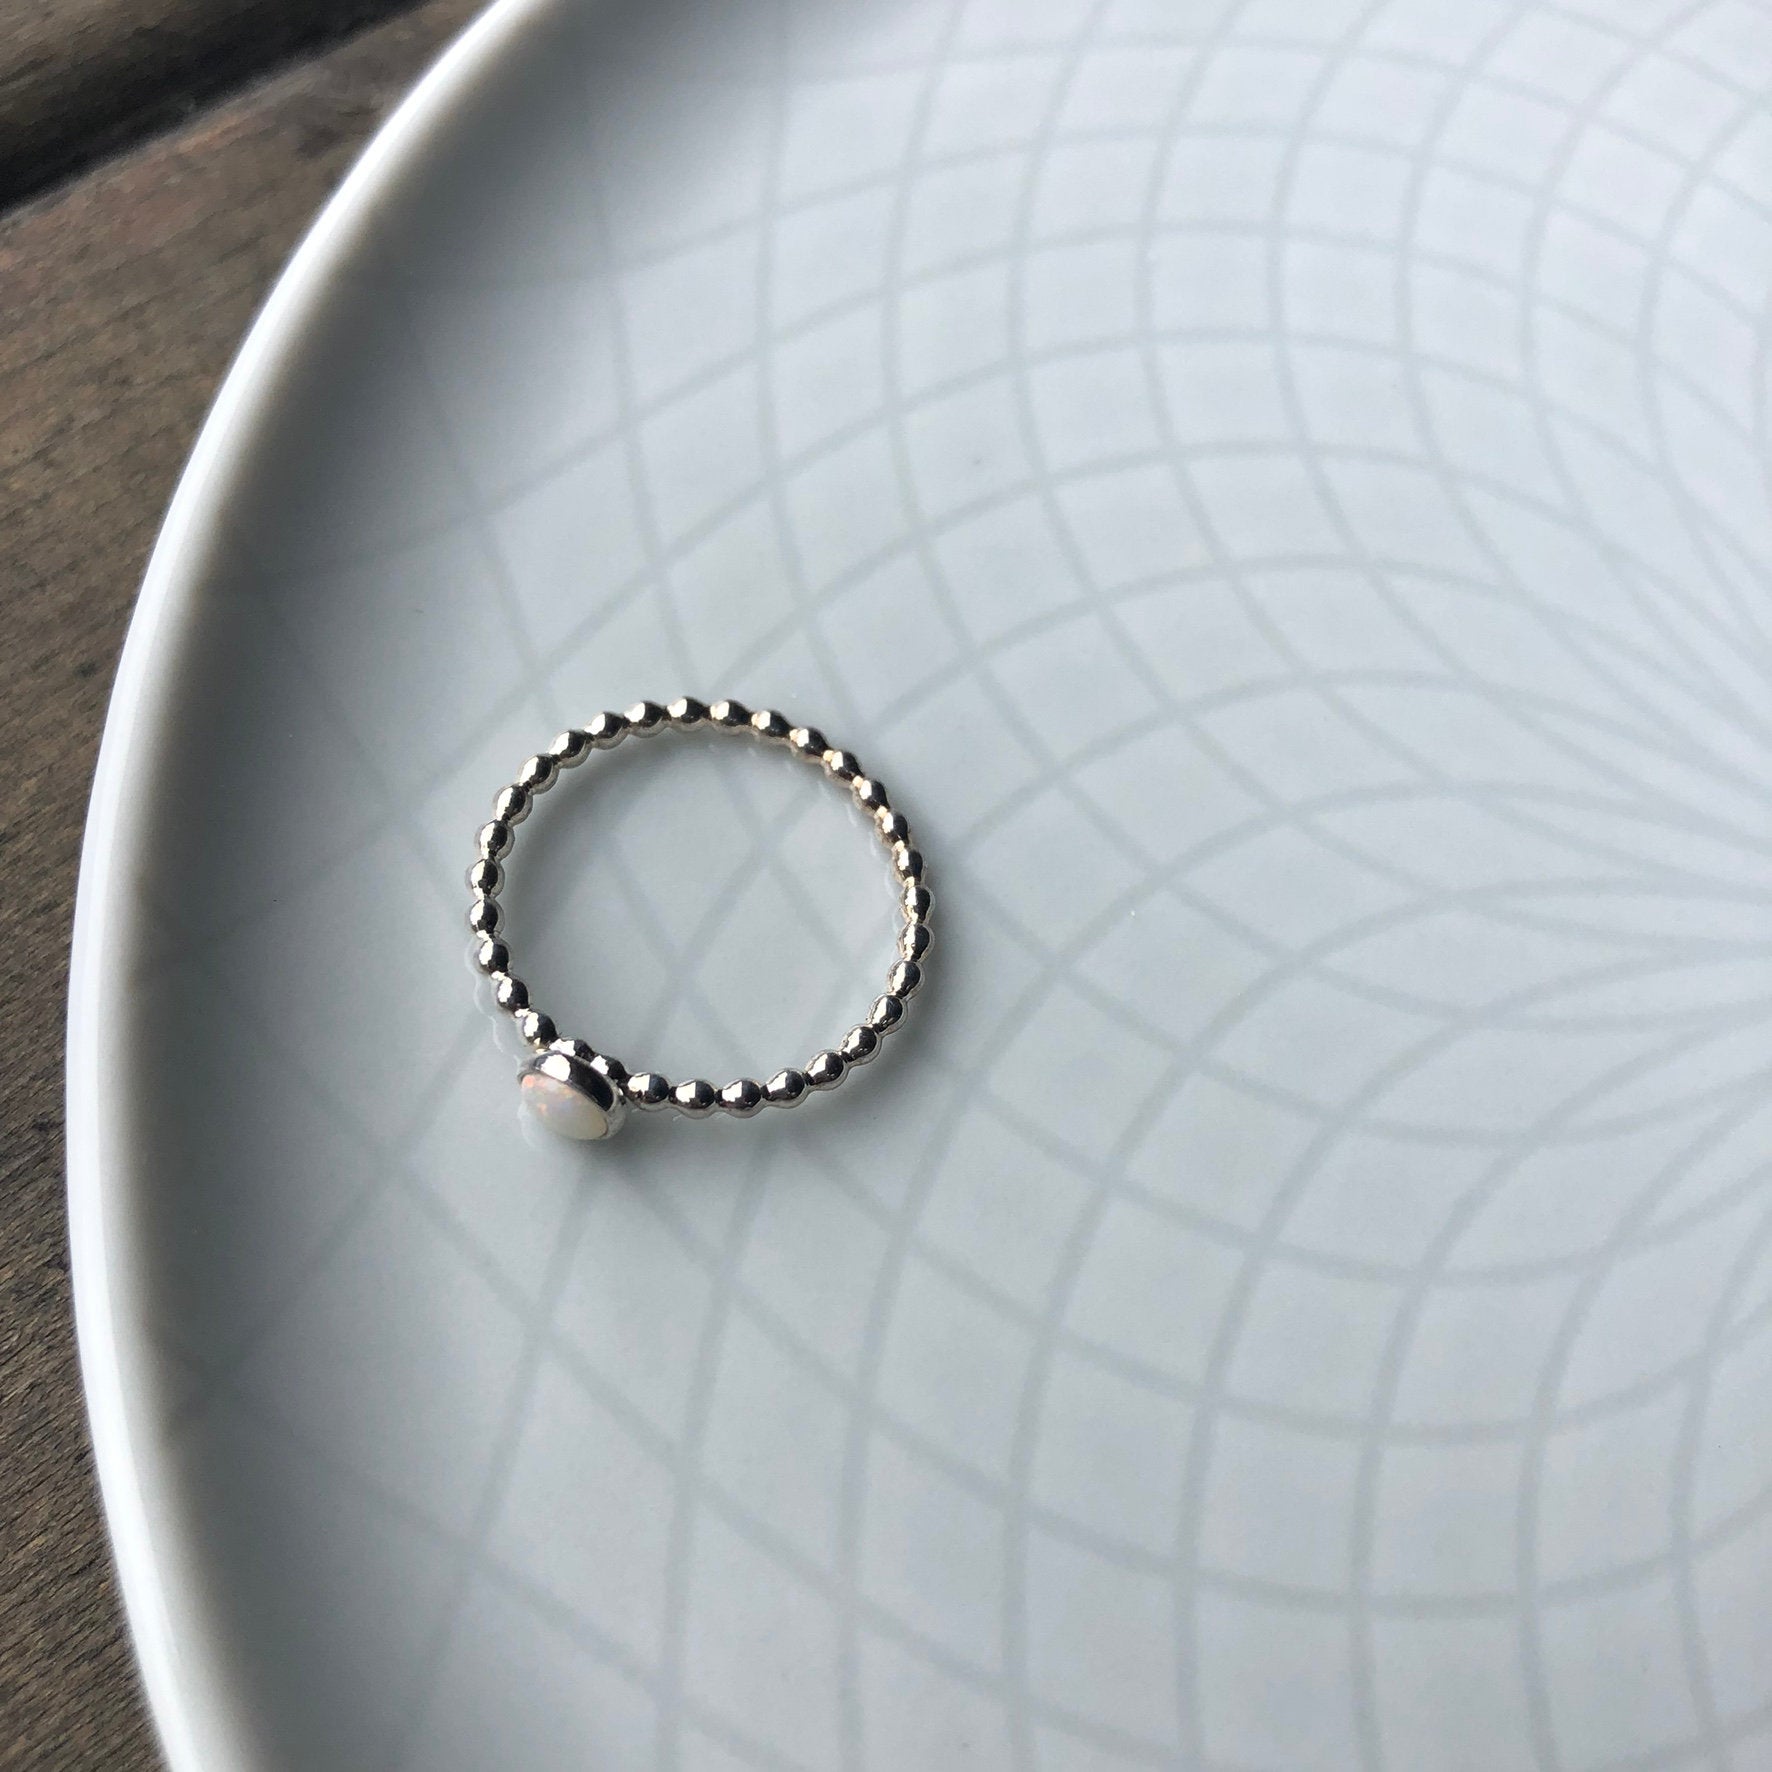 Small Manmade Simulated Opal Silver Ring top view - Trisha Flanagan